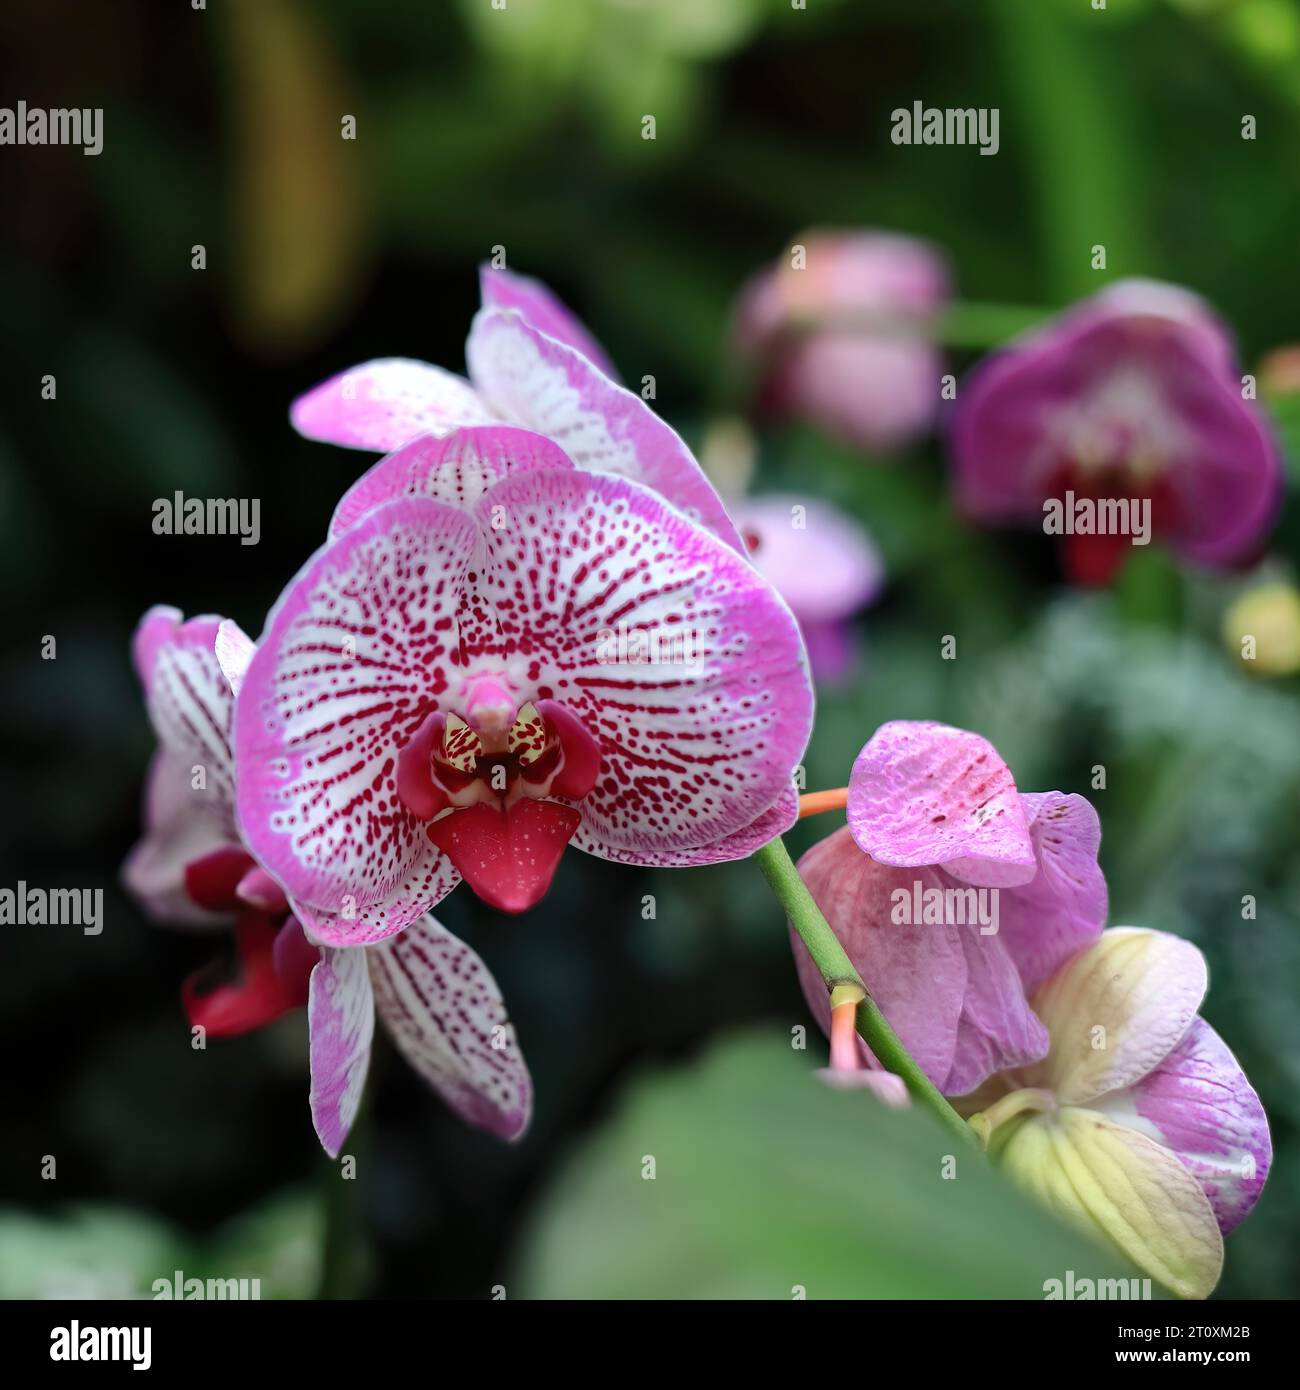 1002 Fiori di Phalaenopsis Fuller's Pink Swallow orchidea di marcature viola-rosse e bordi rosa scuro, Fitzroy Gardens. Melbourne-Australia. Foto Stock